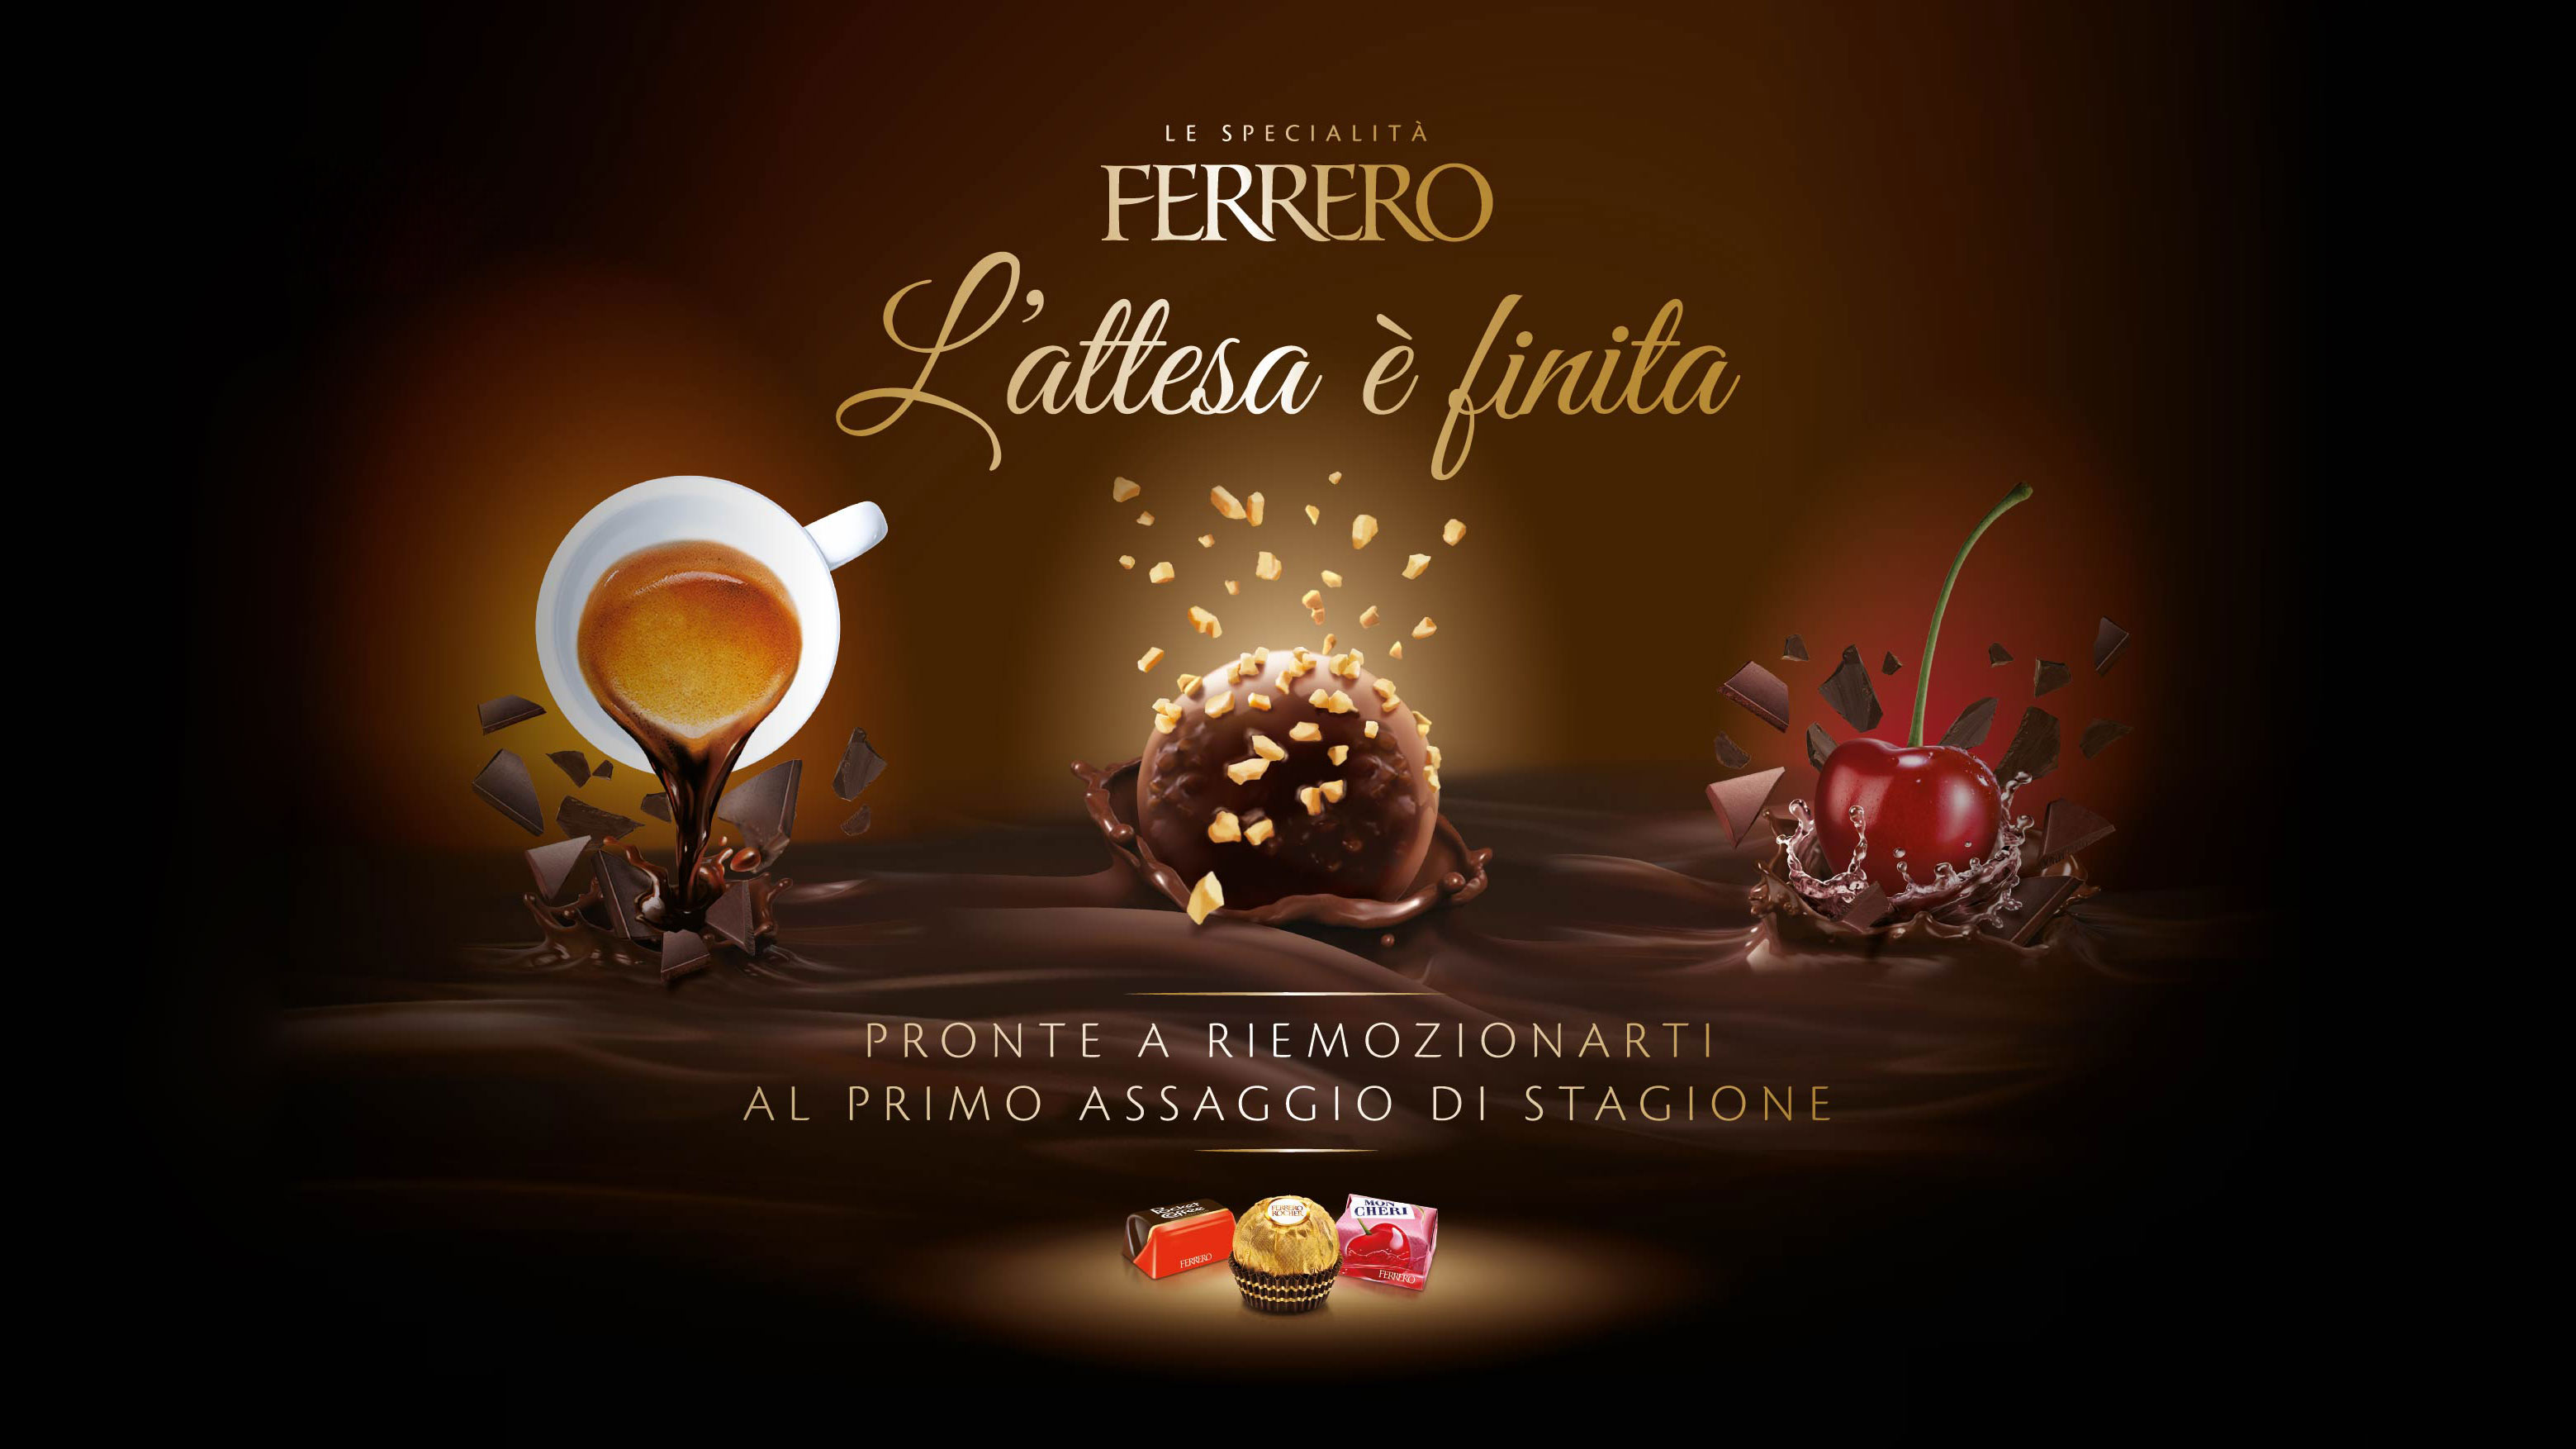 Ferrero Praline Reintro communication materials